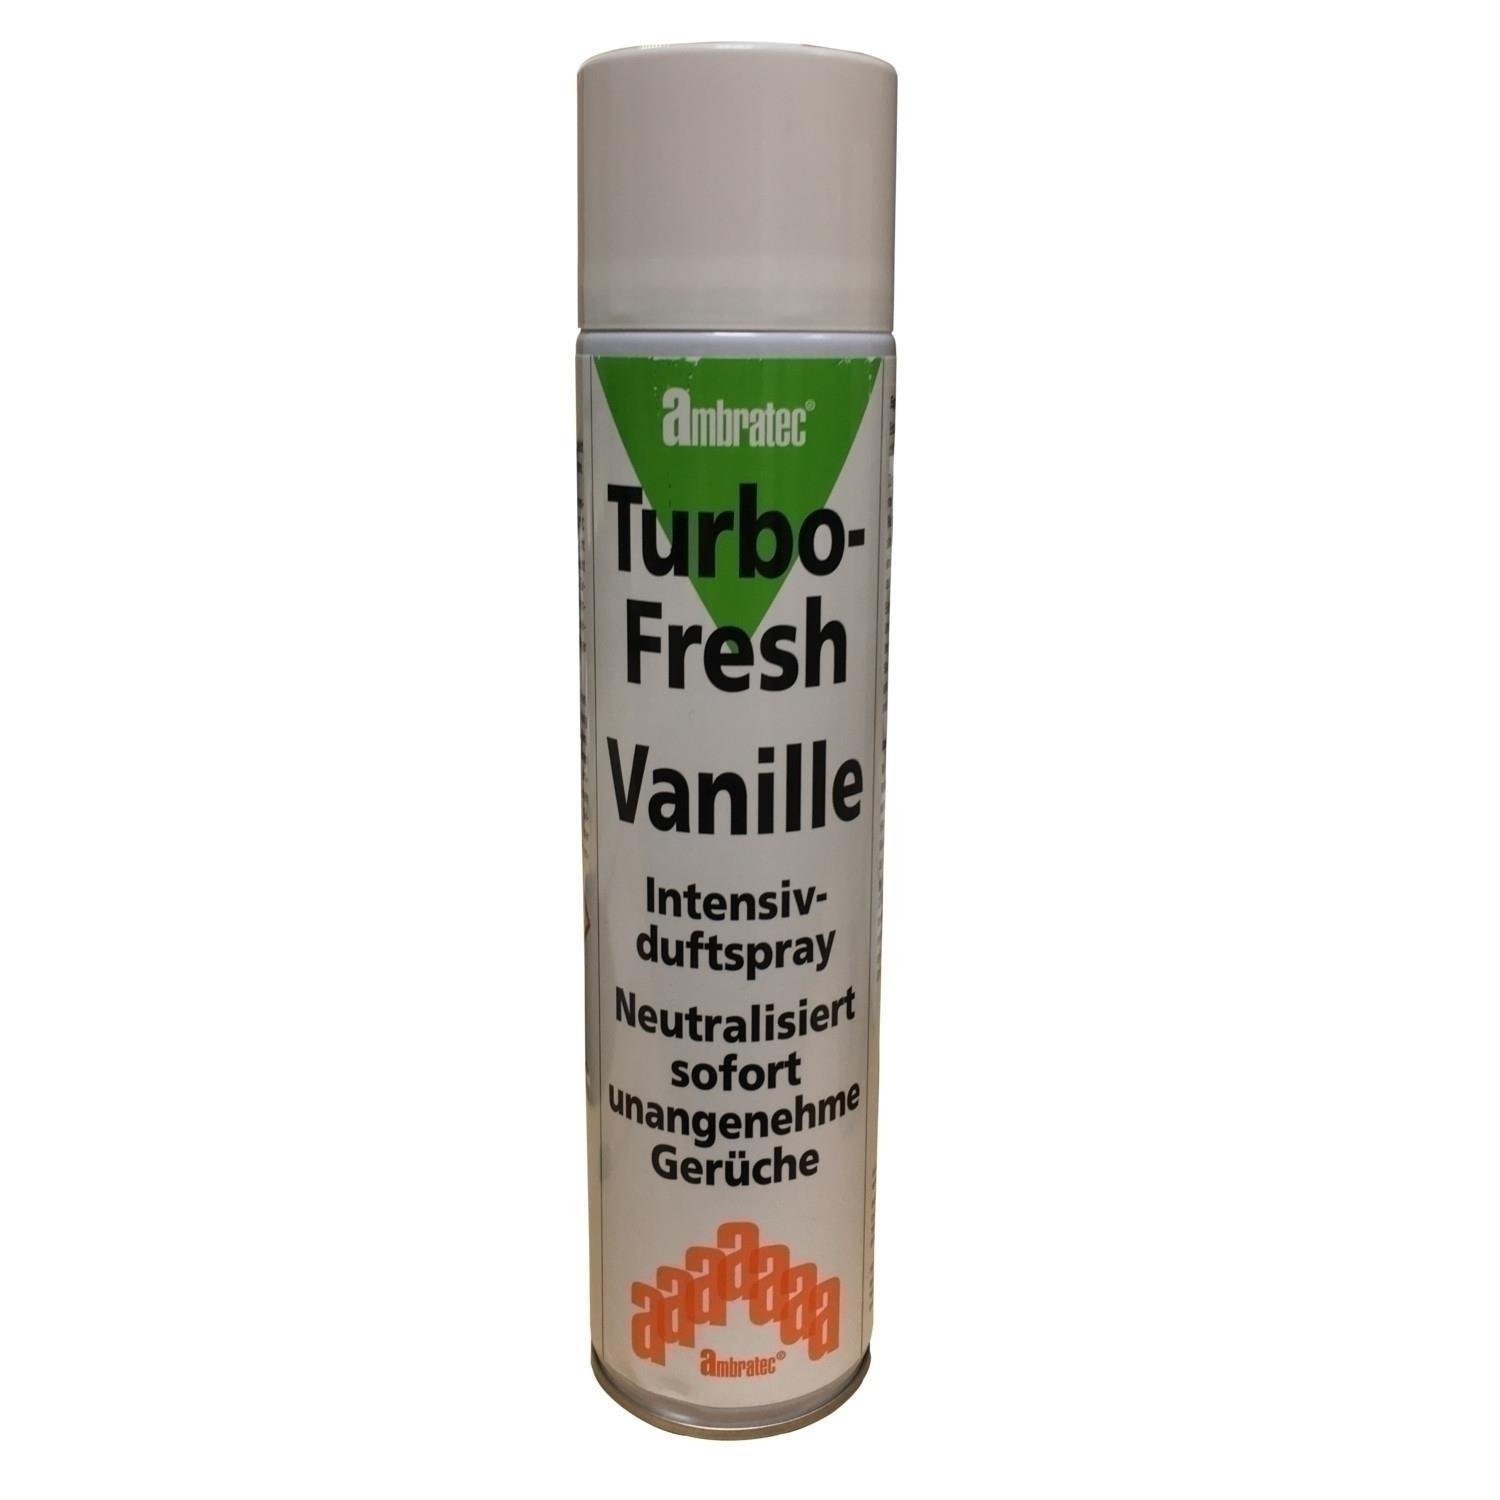 Ambratec Turbo-Fresh Vanille unter Luft & Wasser > Geruchsneutralisierung